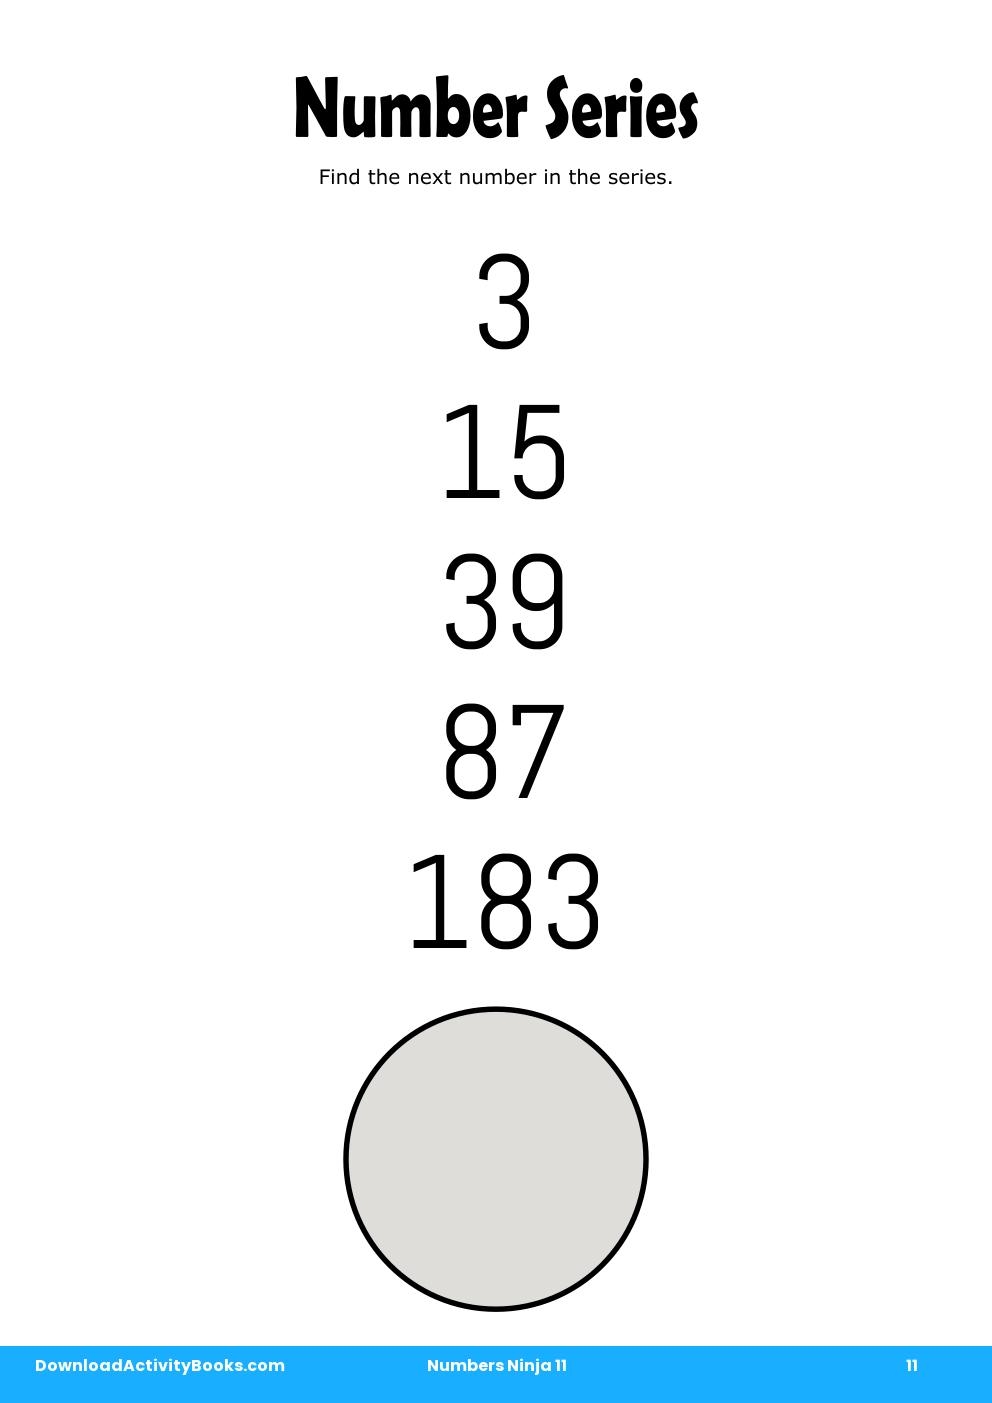 Number Series in Numbers Ninja 11